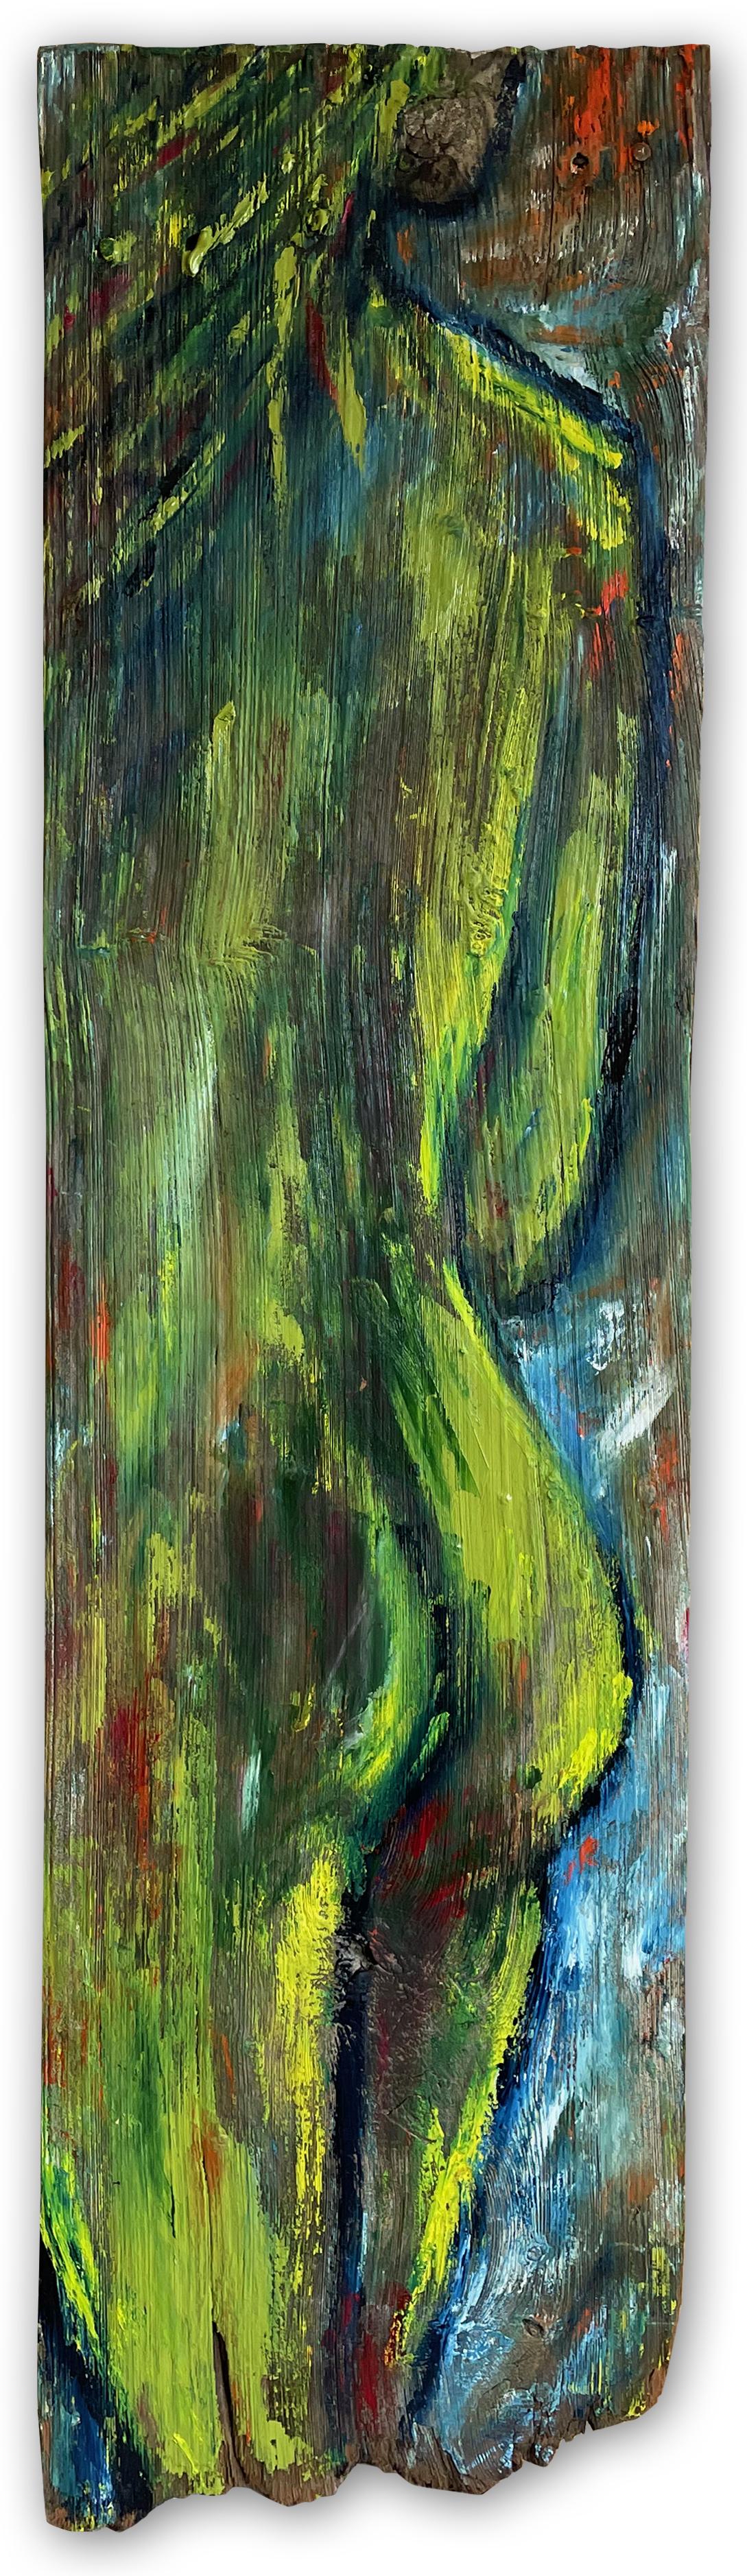 "Envious" de Kristy Chettle est un saisissant nu figuratif contemporain qui marie les textures brutes du bois récupéré à la fluidité de la peinture à l'huile. Cette composition allongée de 46 x 12 pouces illustre le style unique de Chettle, qui met